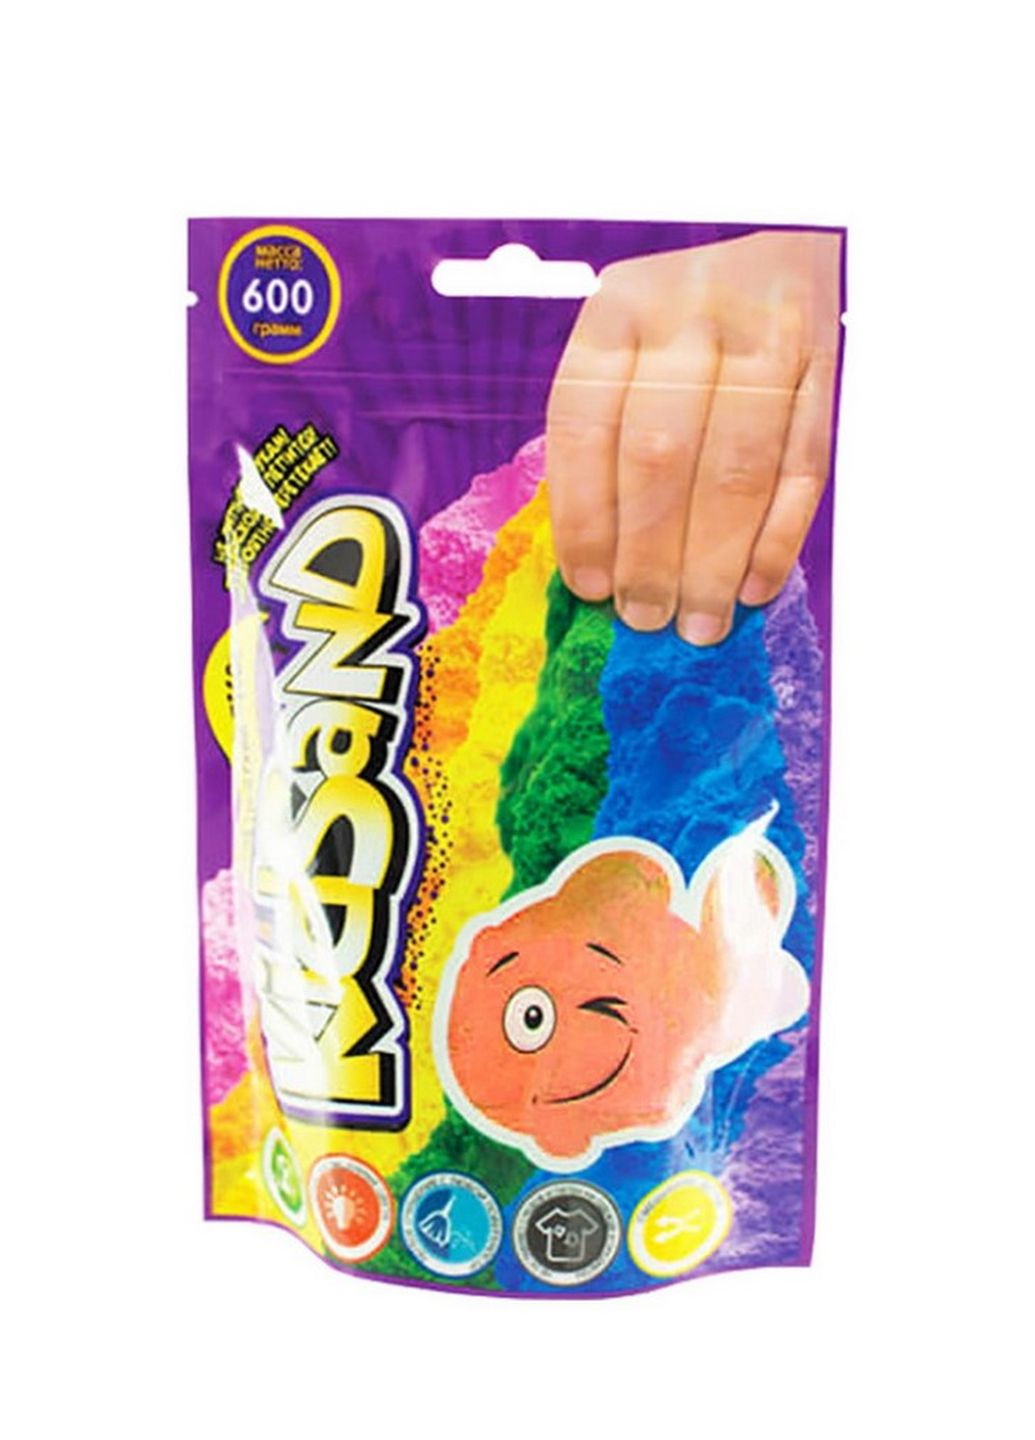 Кинетический песок "KidSand" KS-03-02 пакет 600 гр (Оранжевый) Danko Toys (266631730)